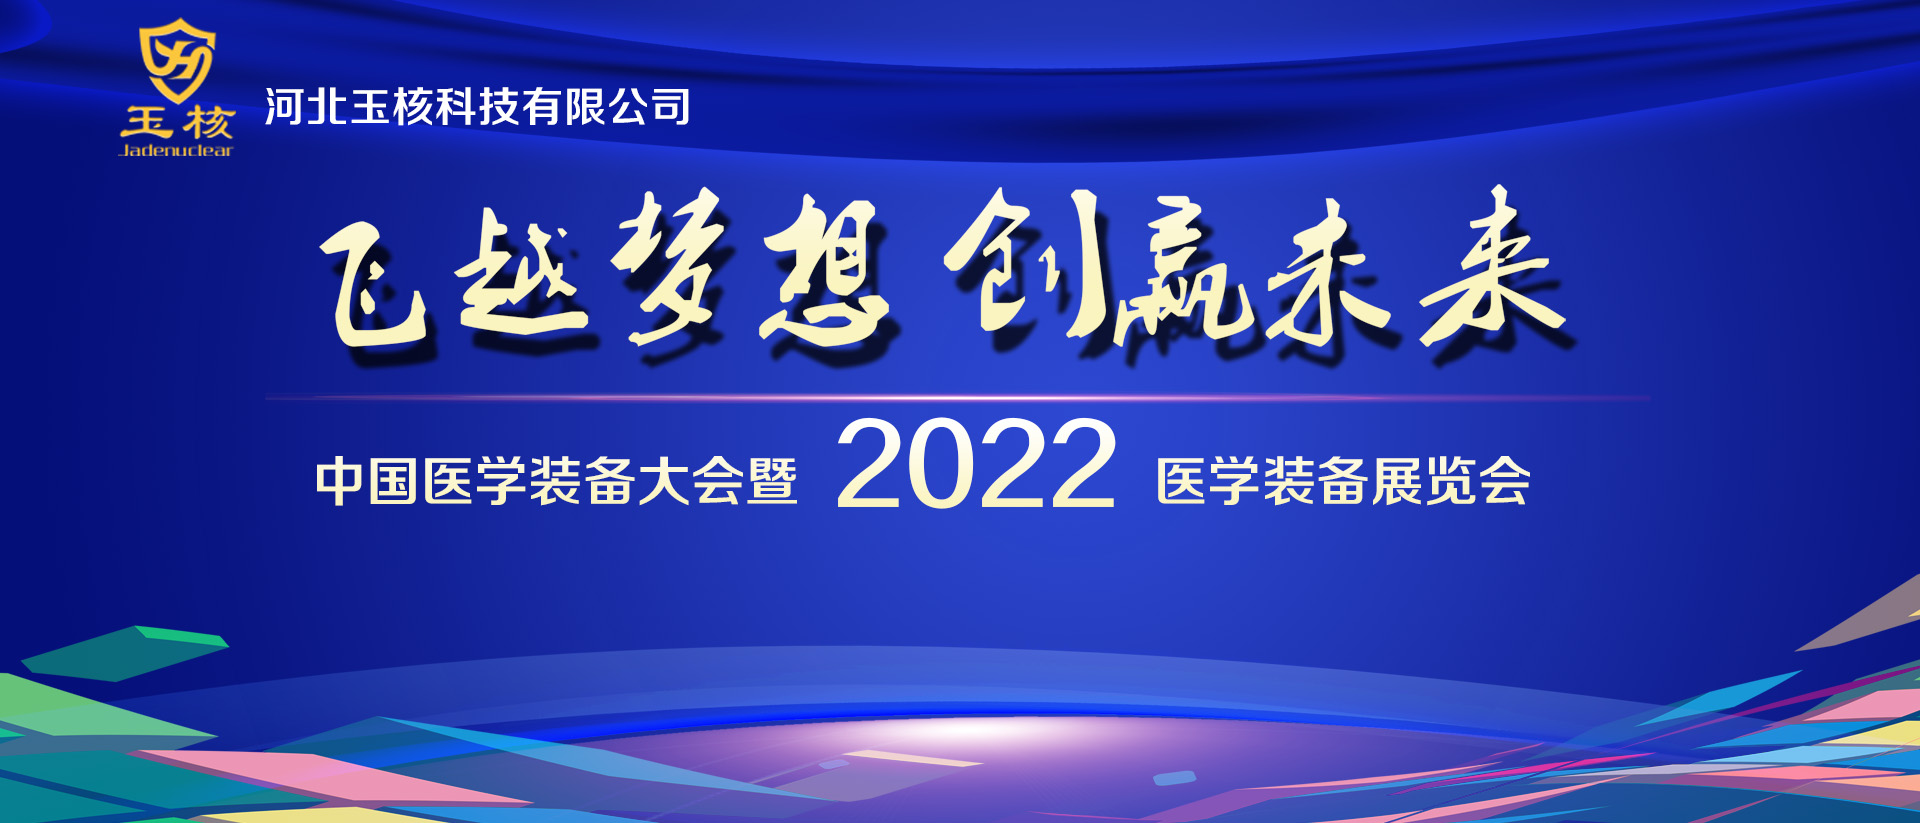 中国医学装备大会暨 2022 医学装备展览会